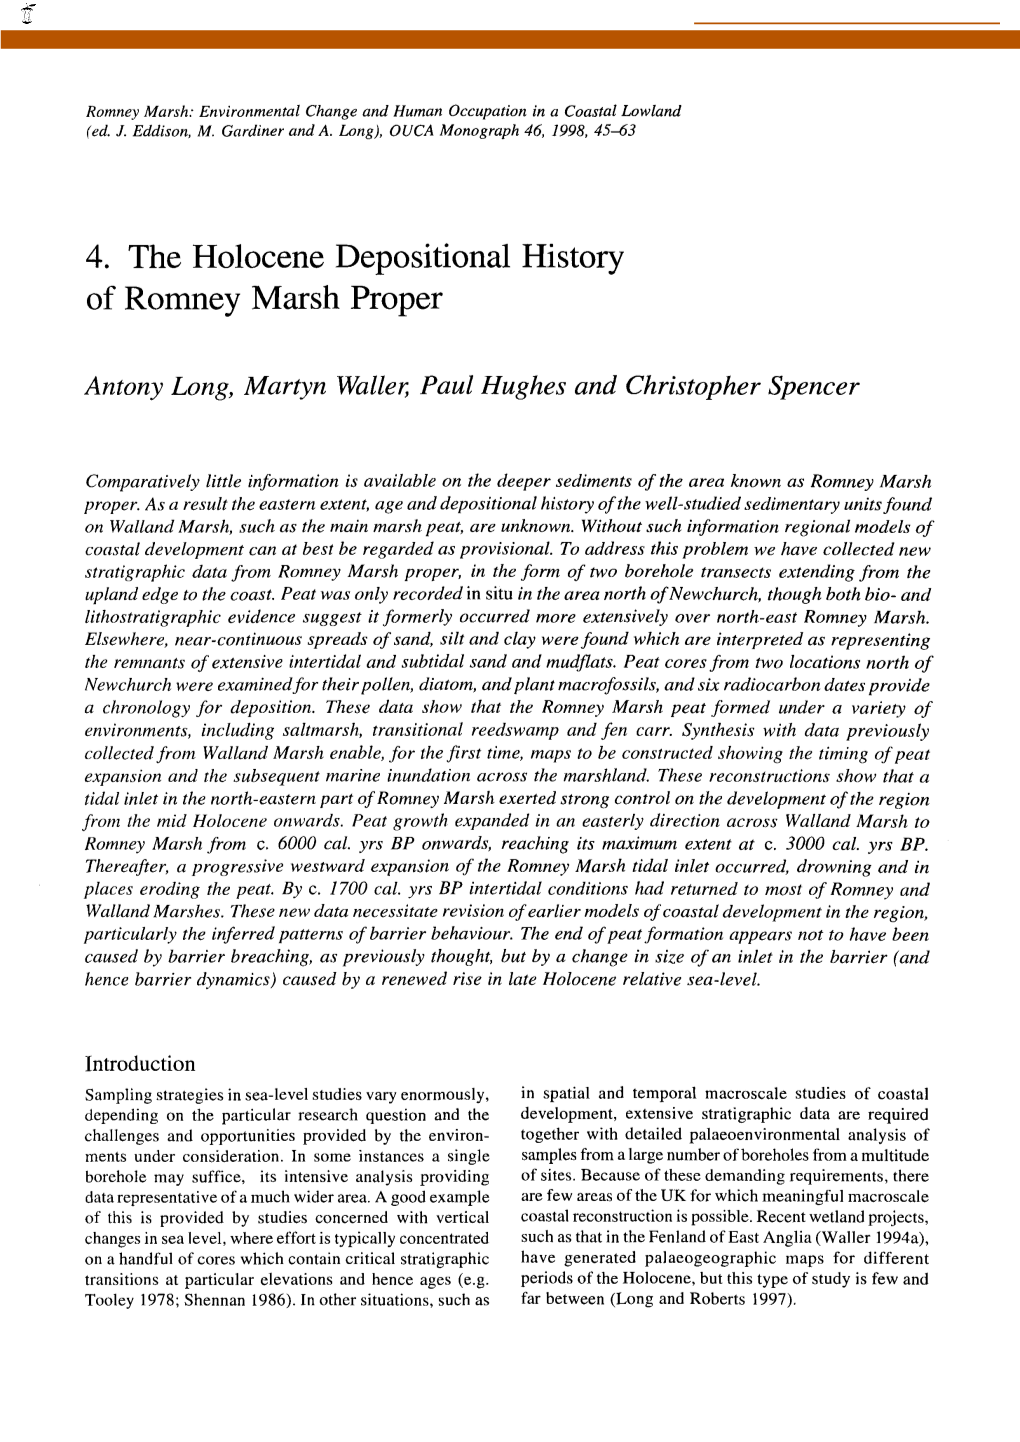 4. the Holocene Depositional History of Romney Marsh Proper